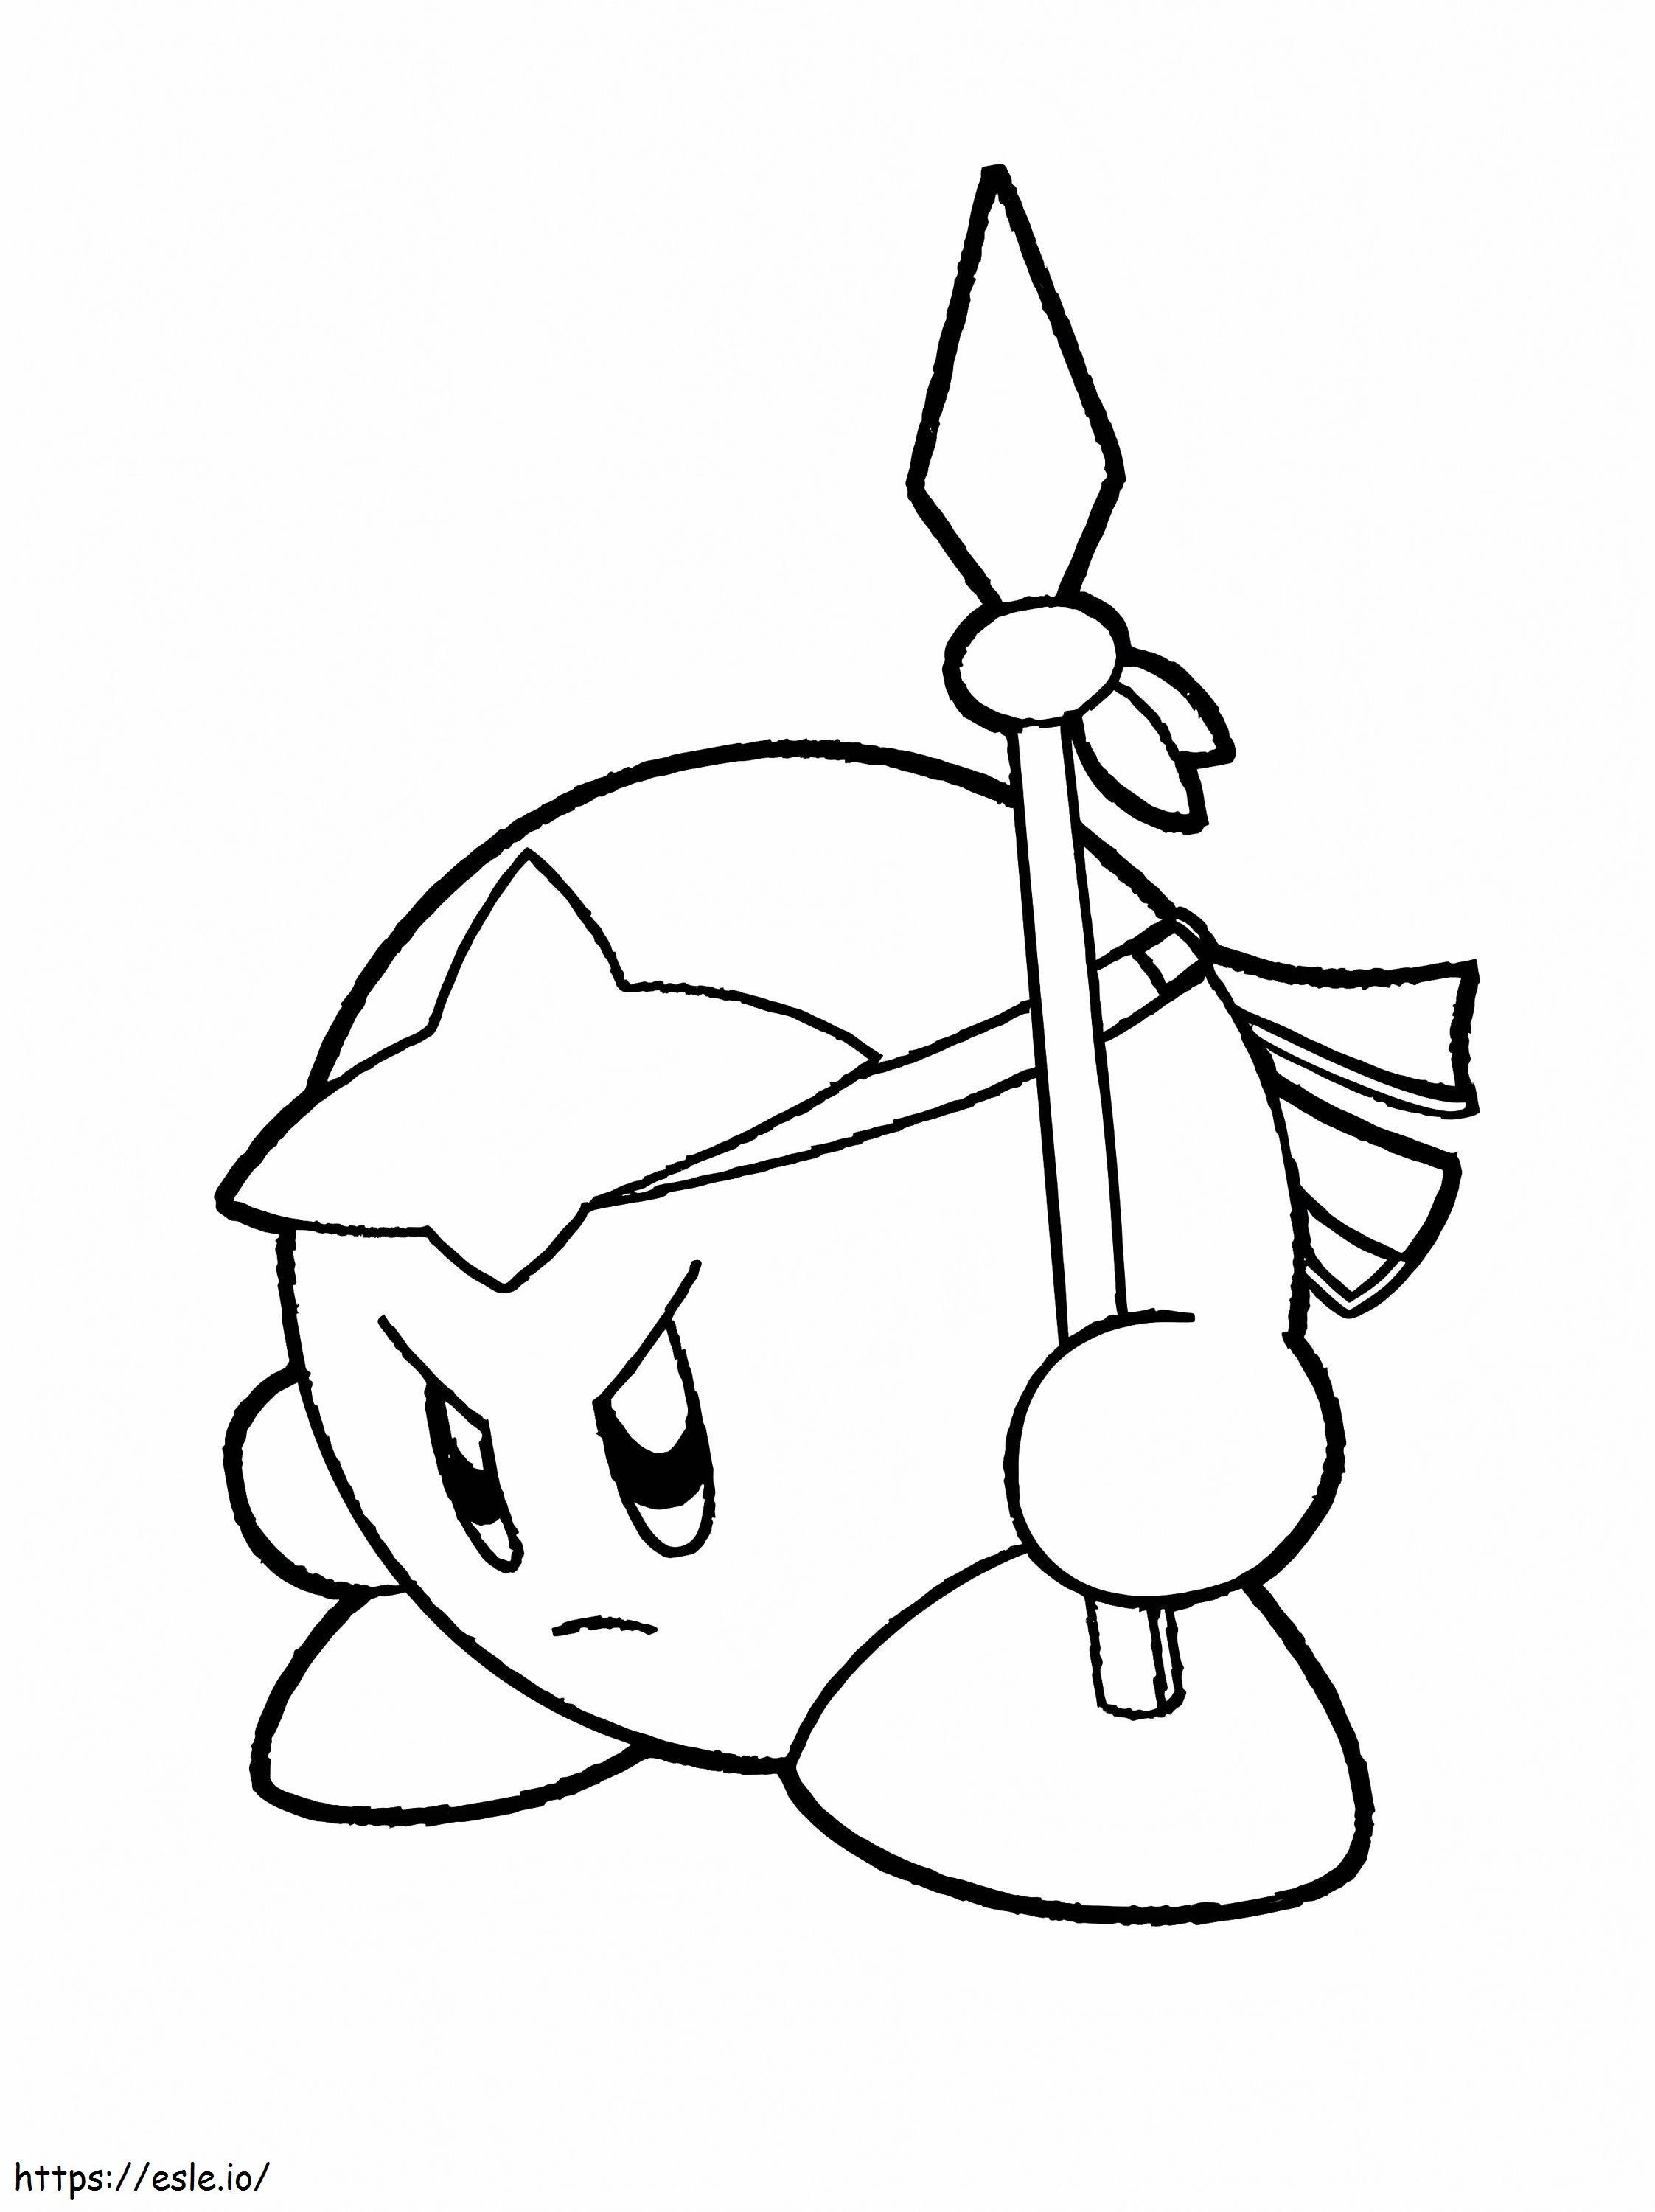 Kirby il combattente da colorare